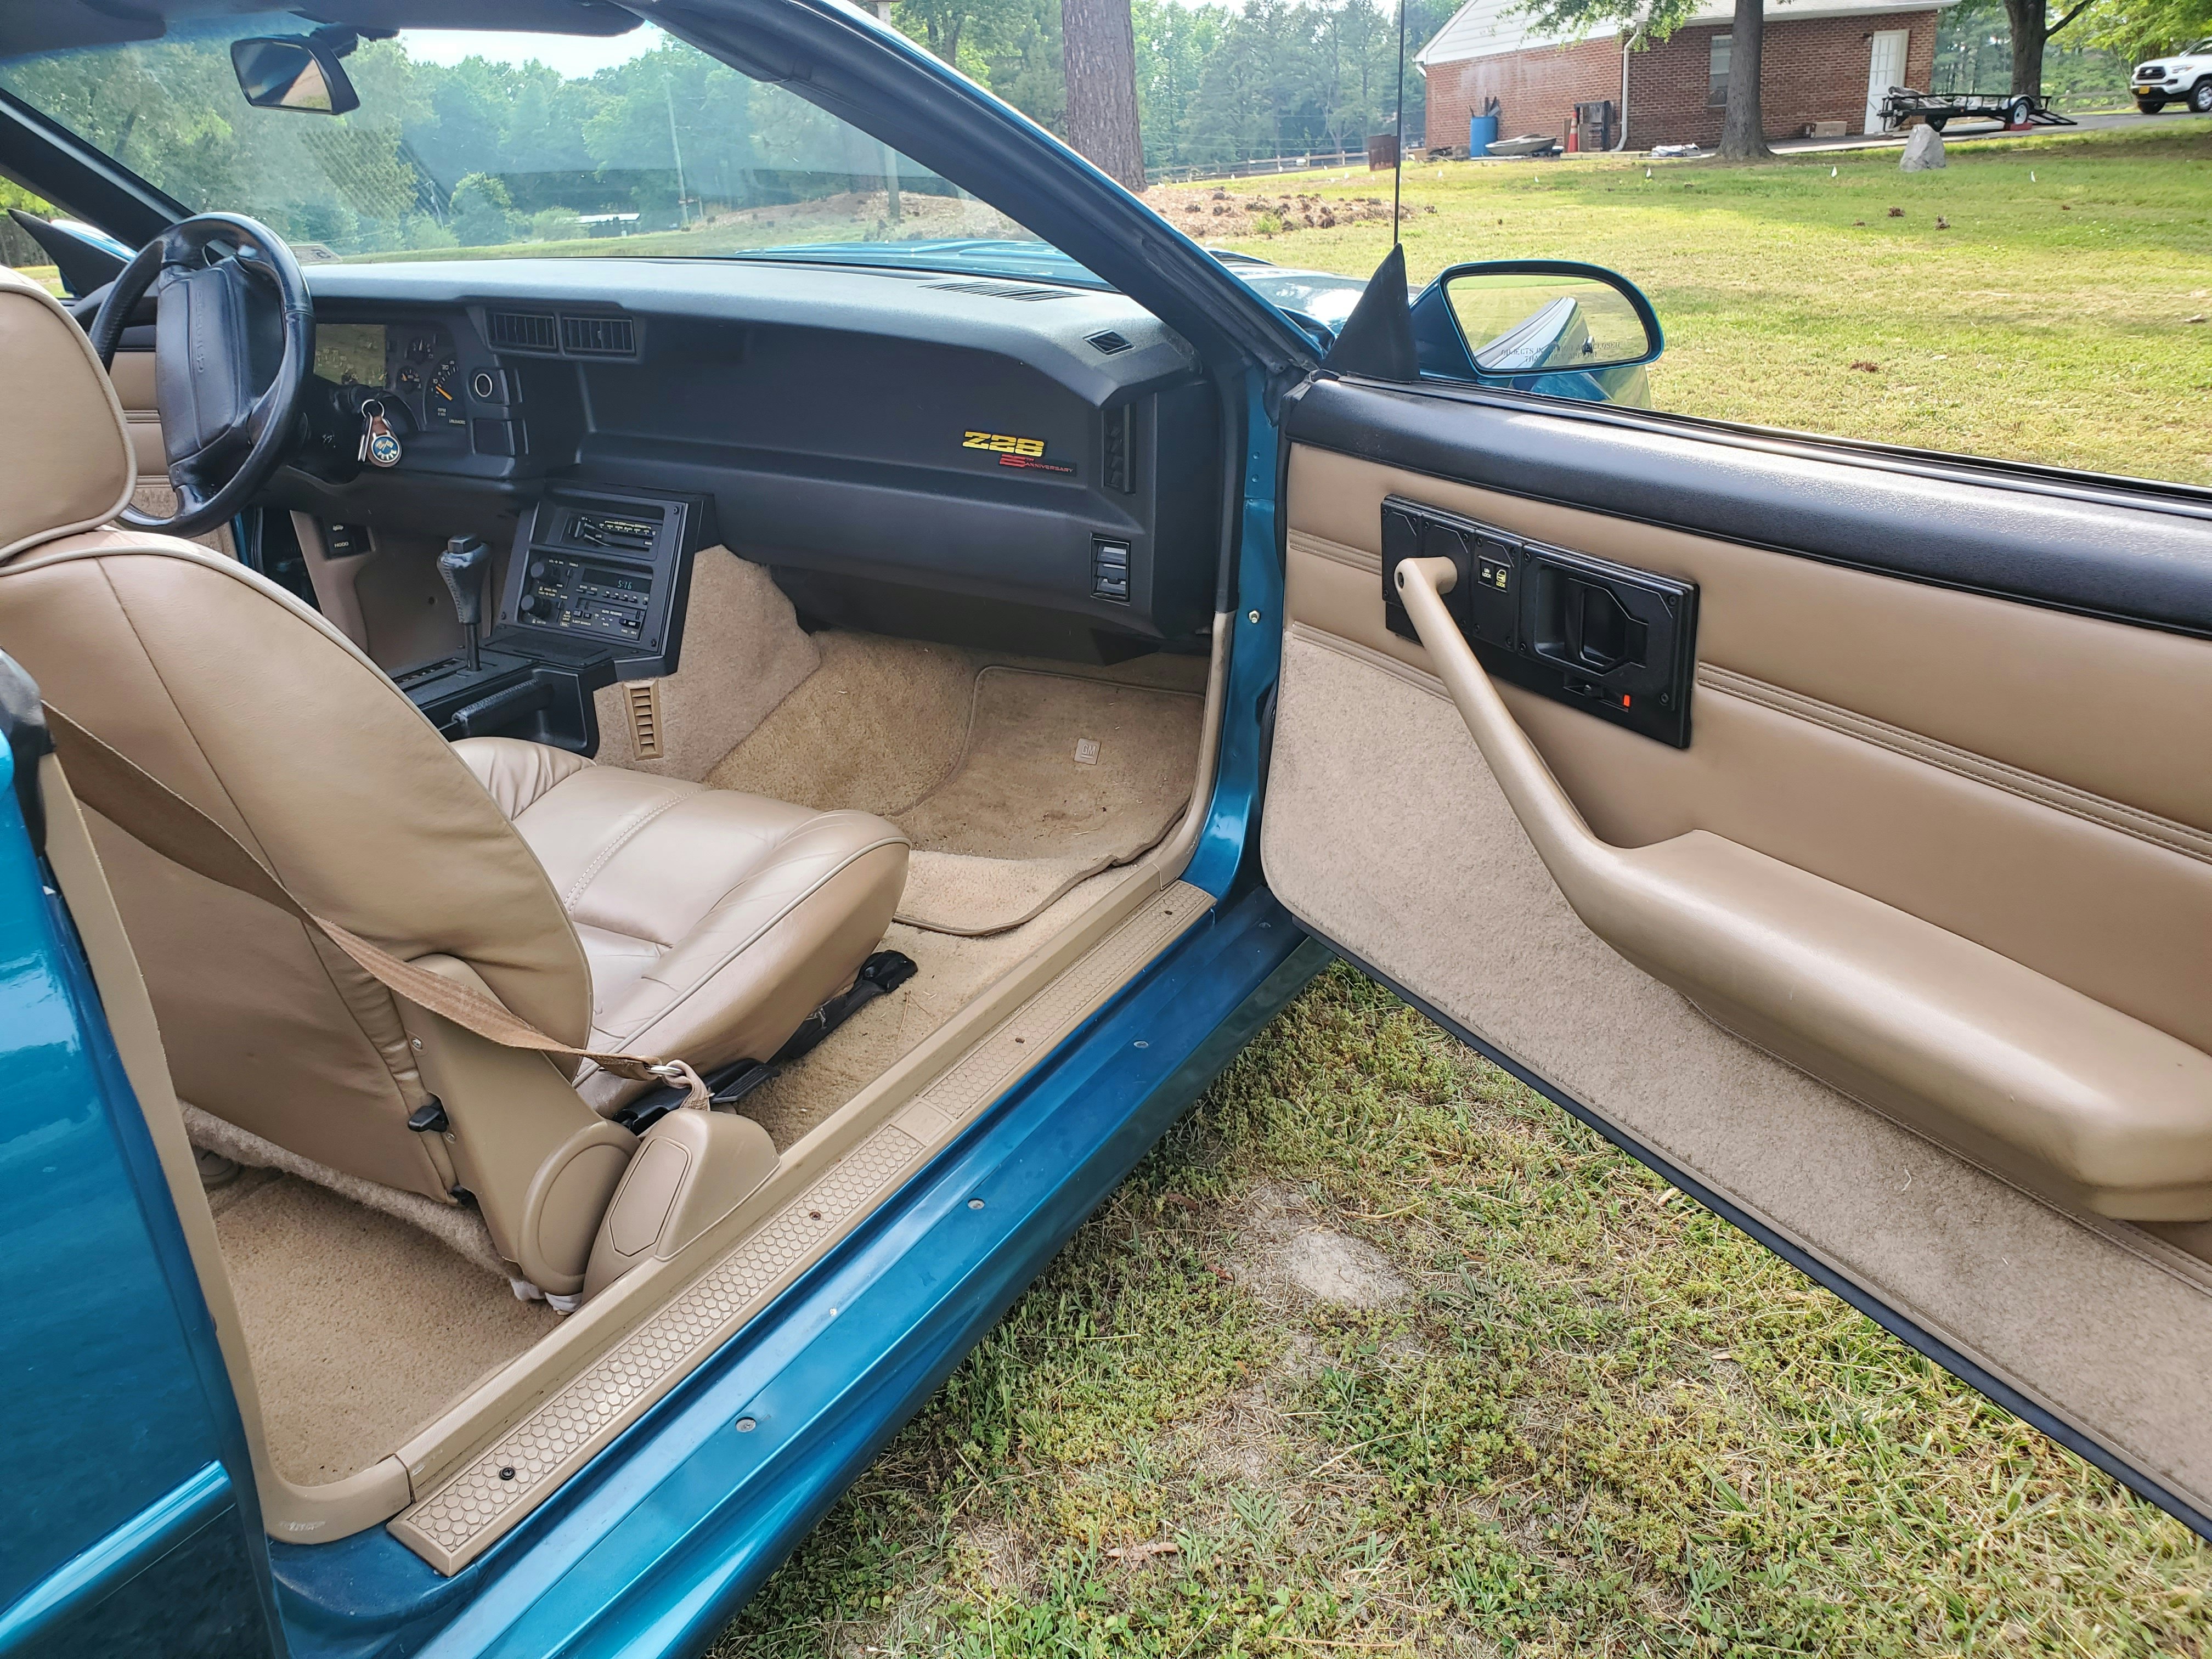 1992 camaro interior